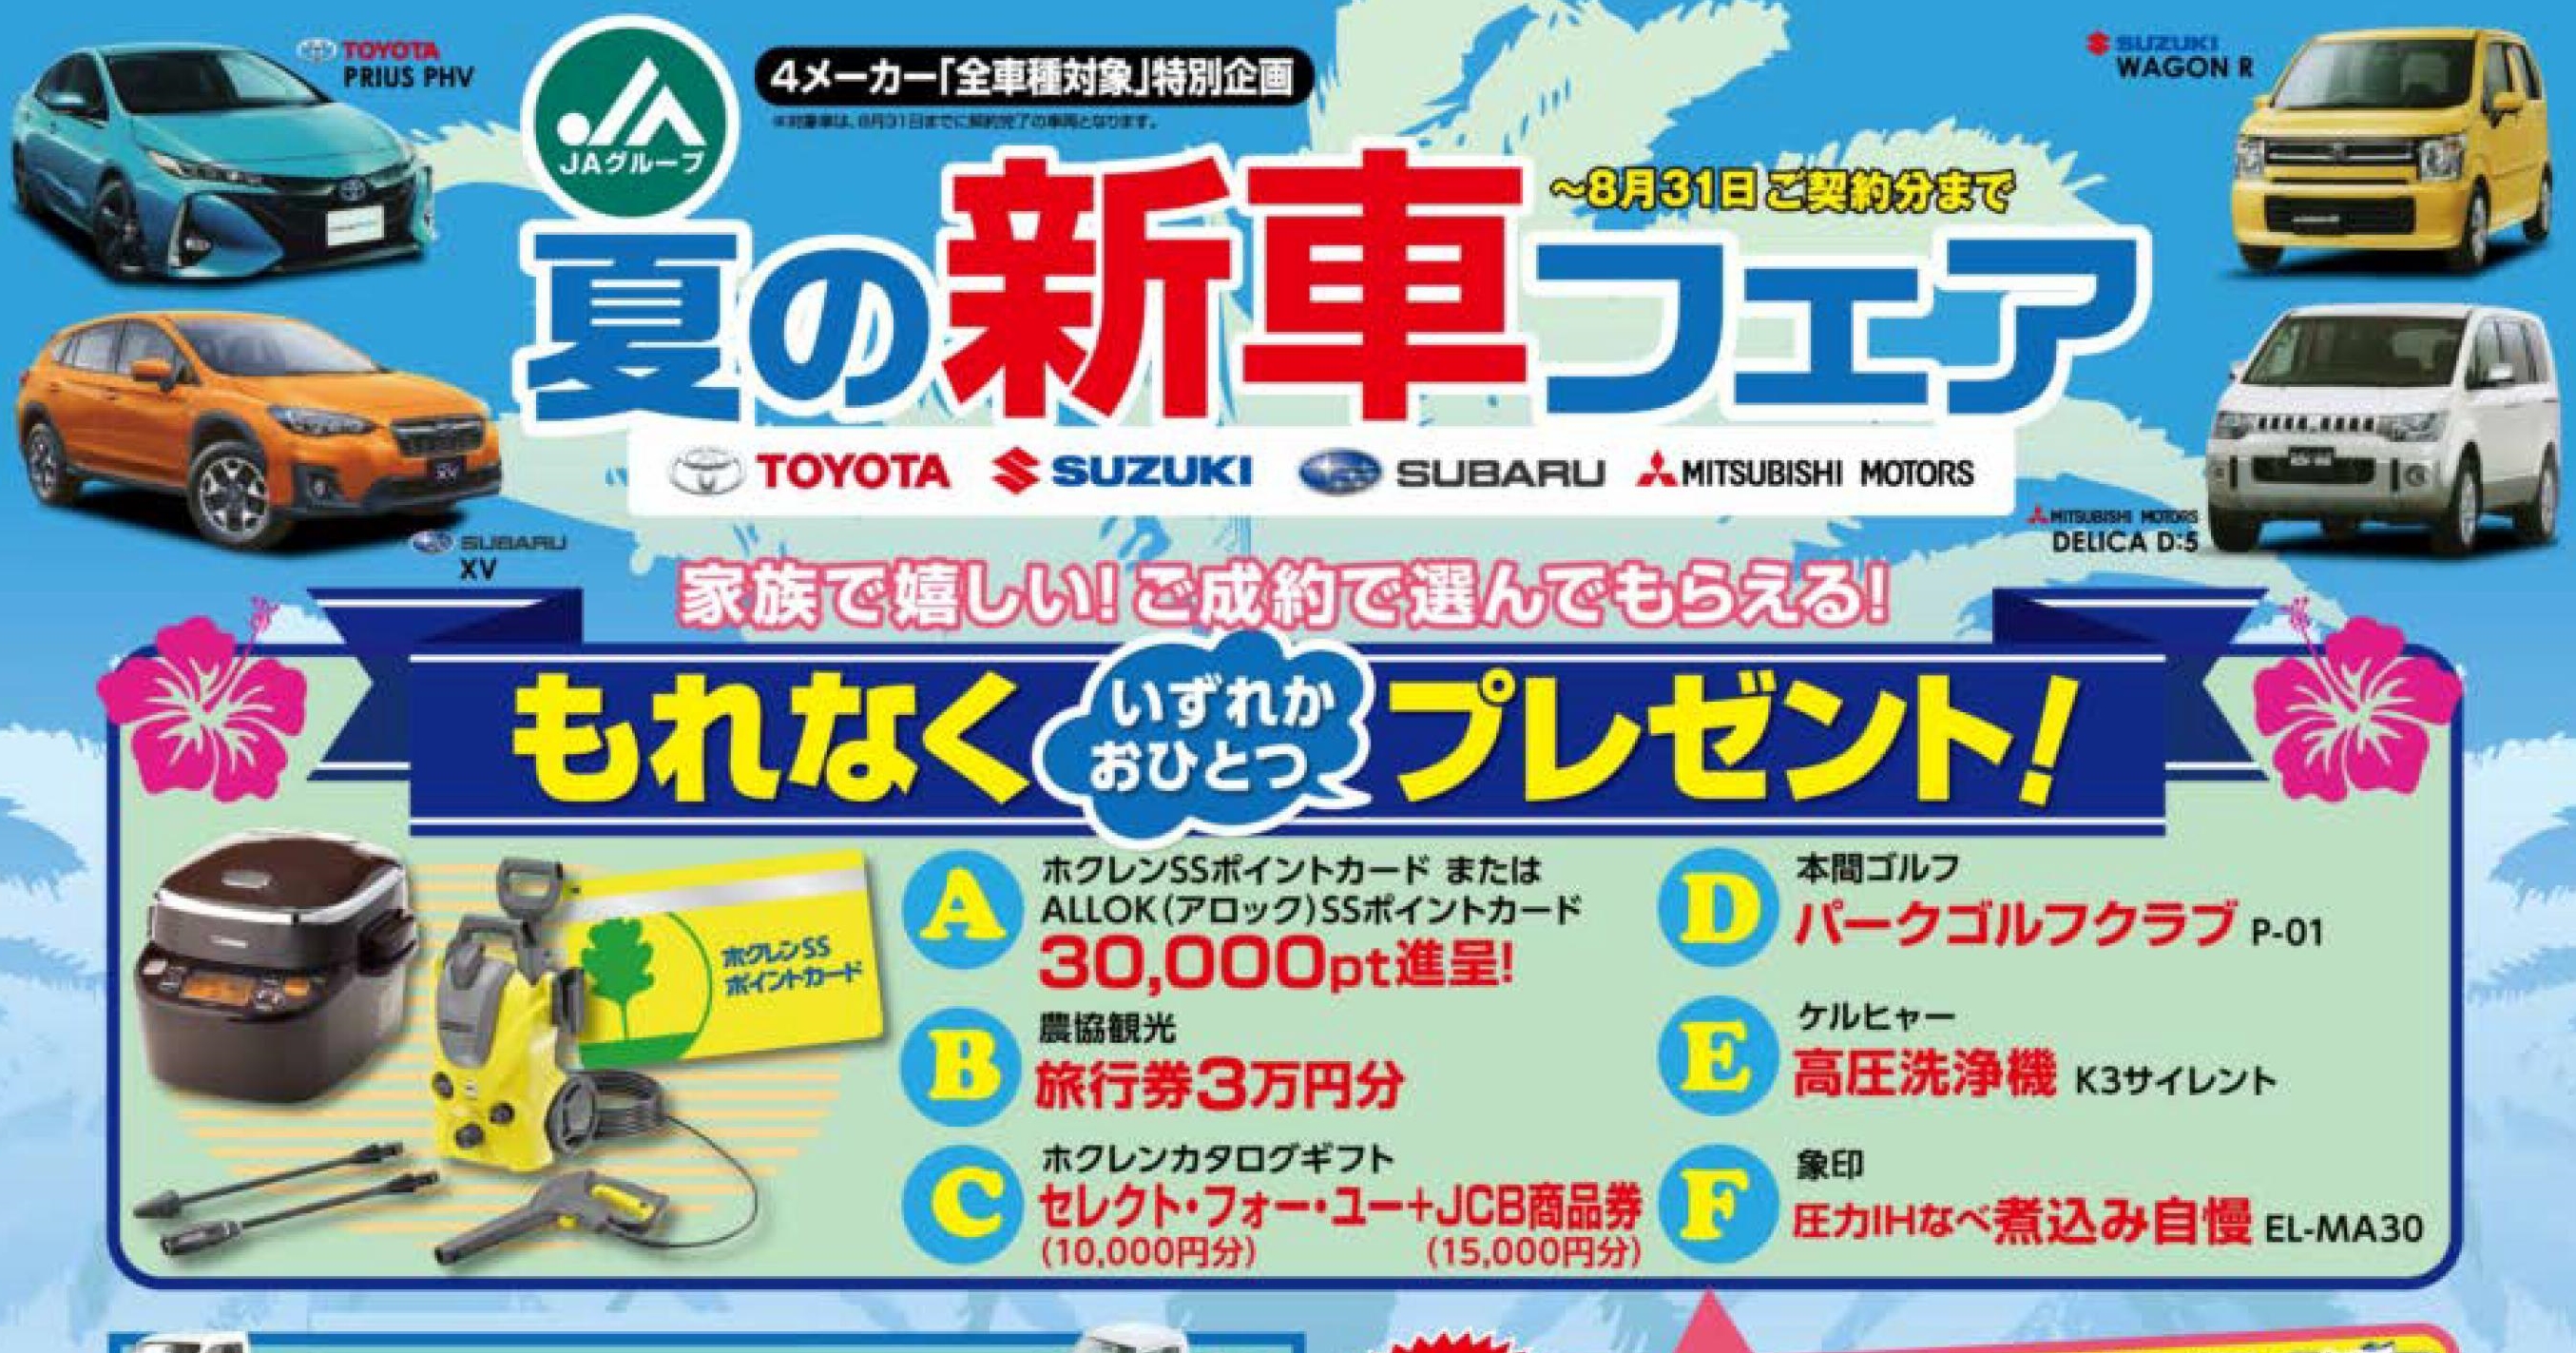 トヨタ・スズキ・スバル・三菱全車種対象 夏の新車フェアのお知らせ